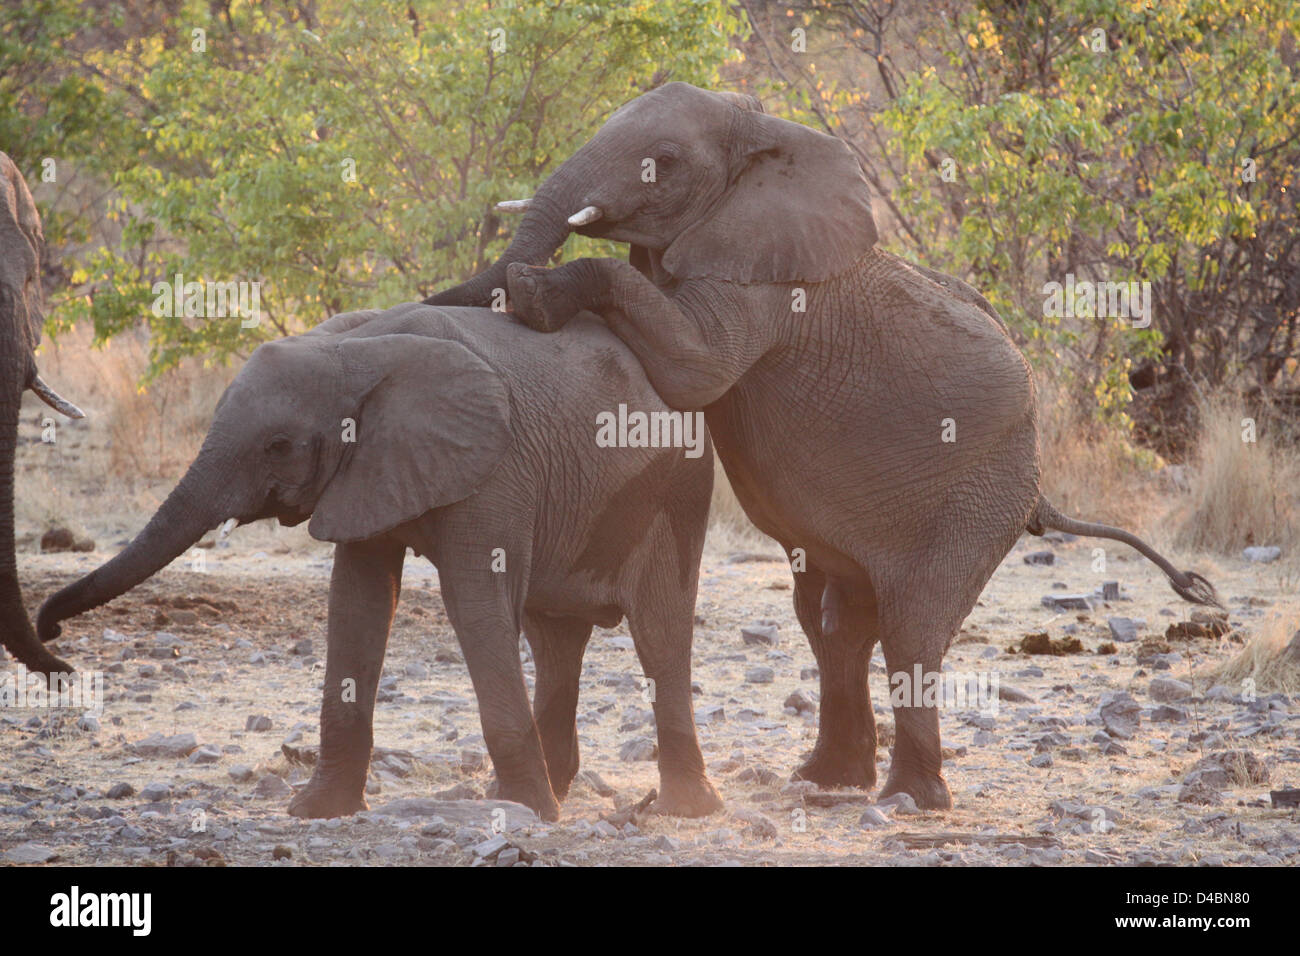 Elephants playing at waterhole, Etosha National Park, Namibia Stock Photo